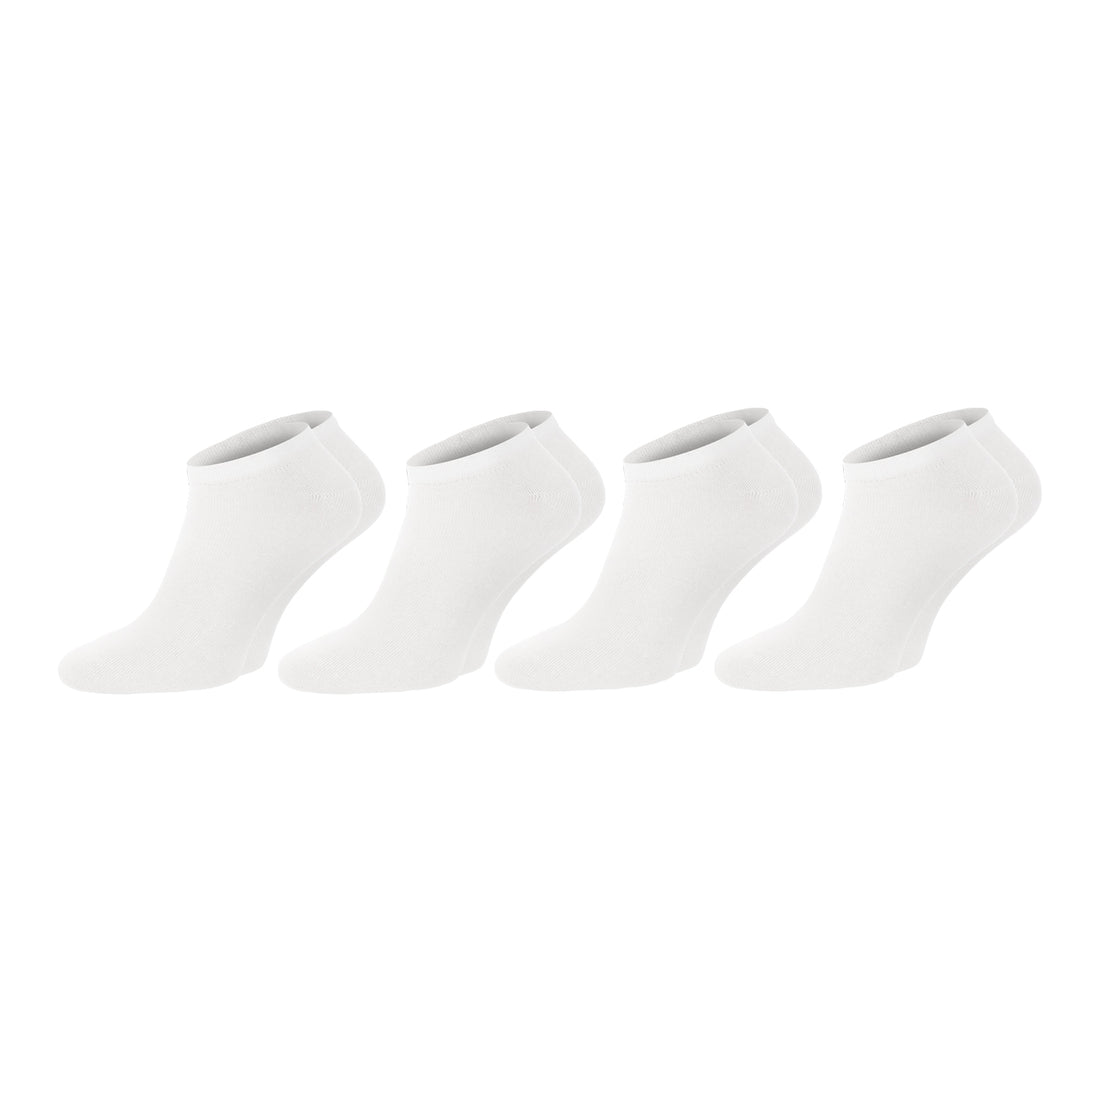 ChiliLifestyle Sneaker Weiß, 4 Paar, für Damen und Herren, Freizeit